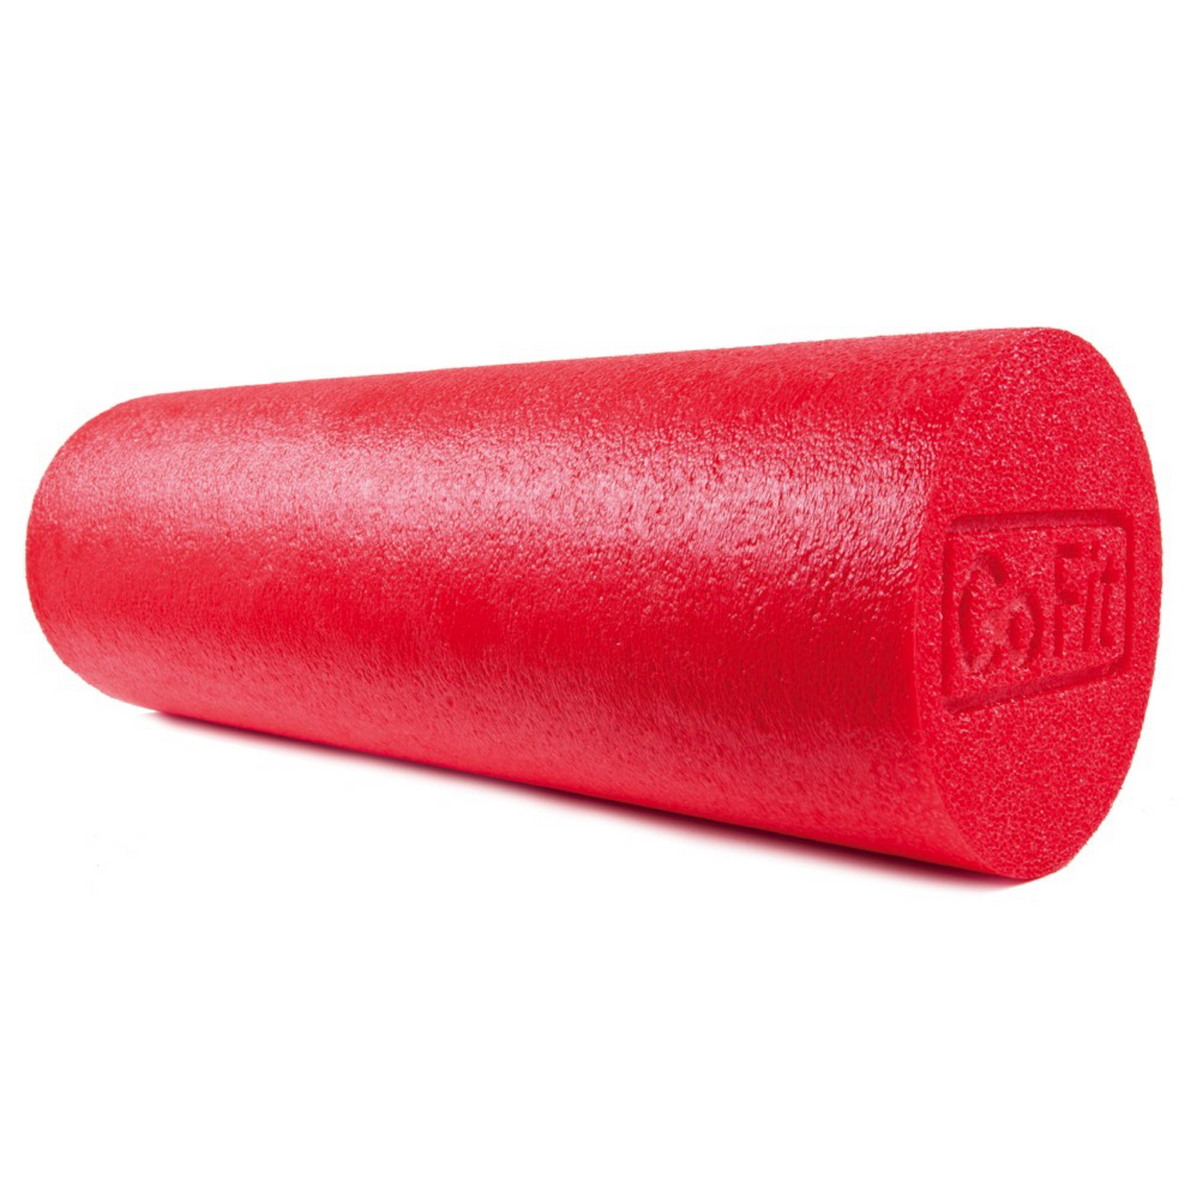 Rouleau mousse Go-Fit foam roller rouge